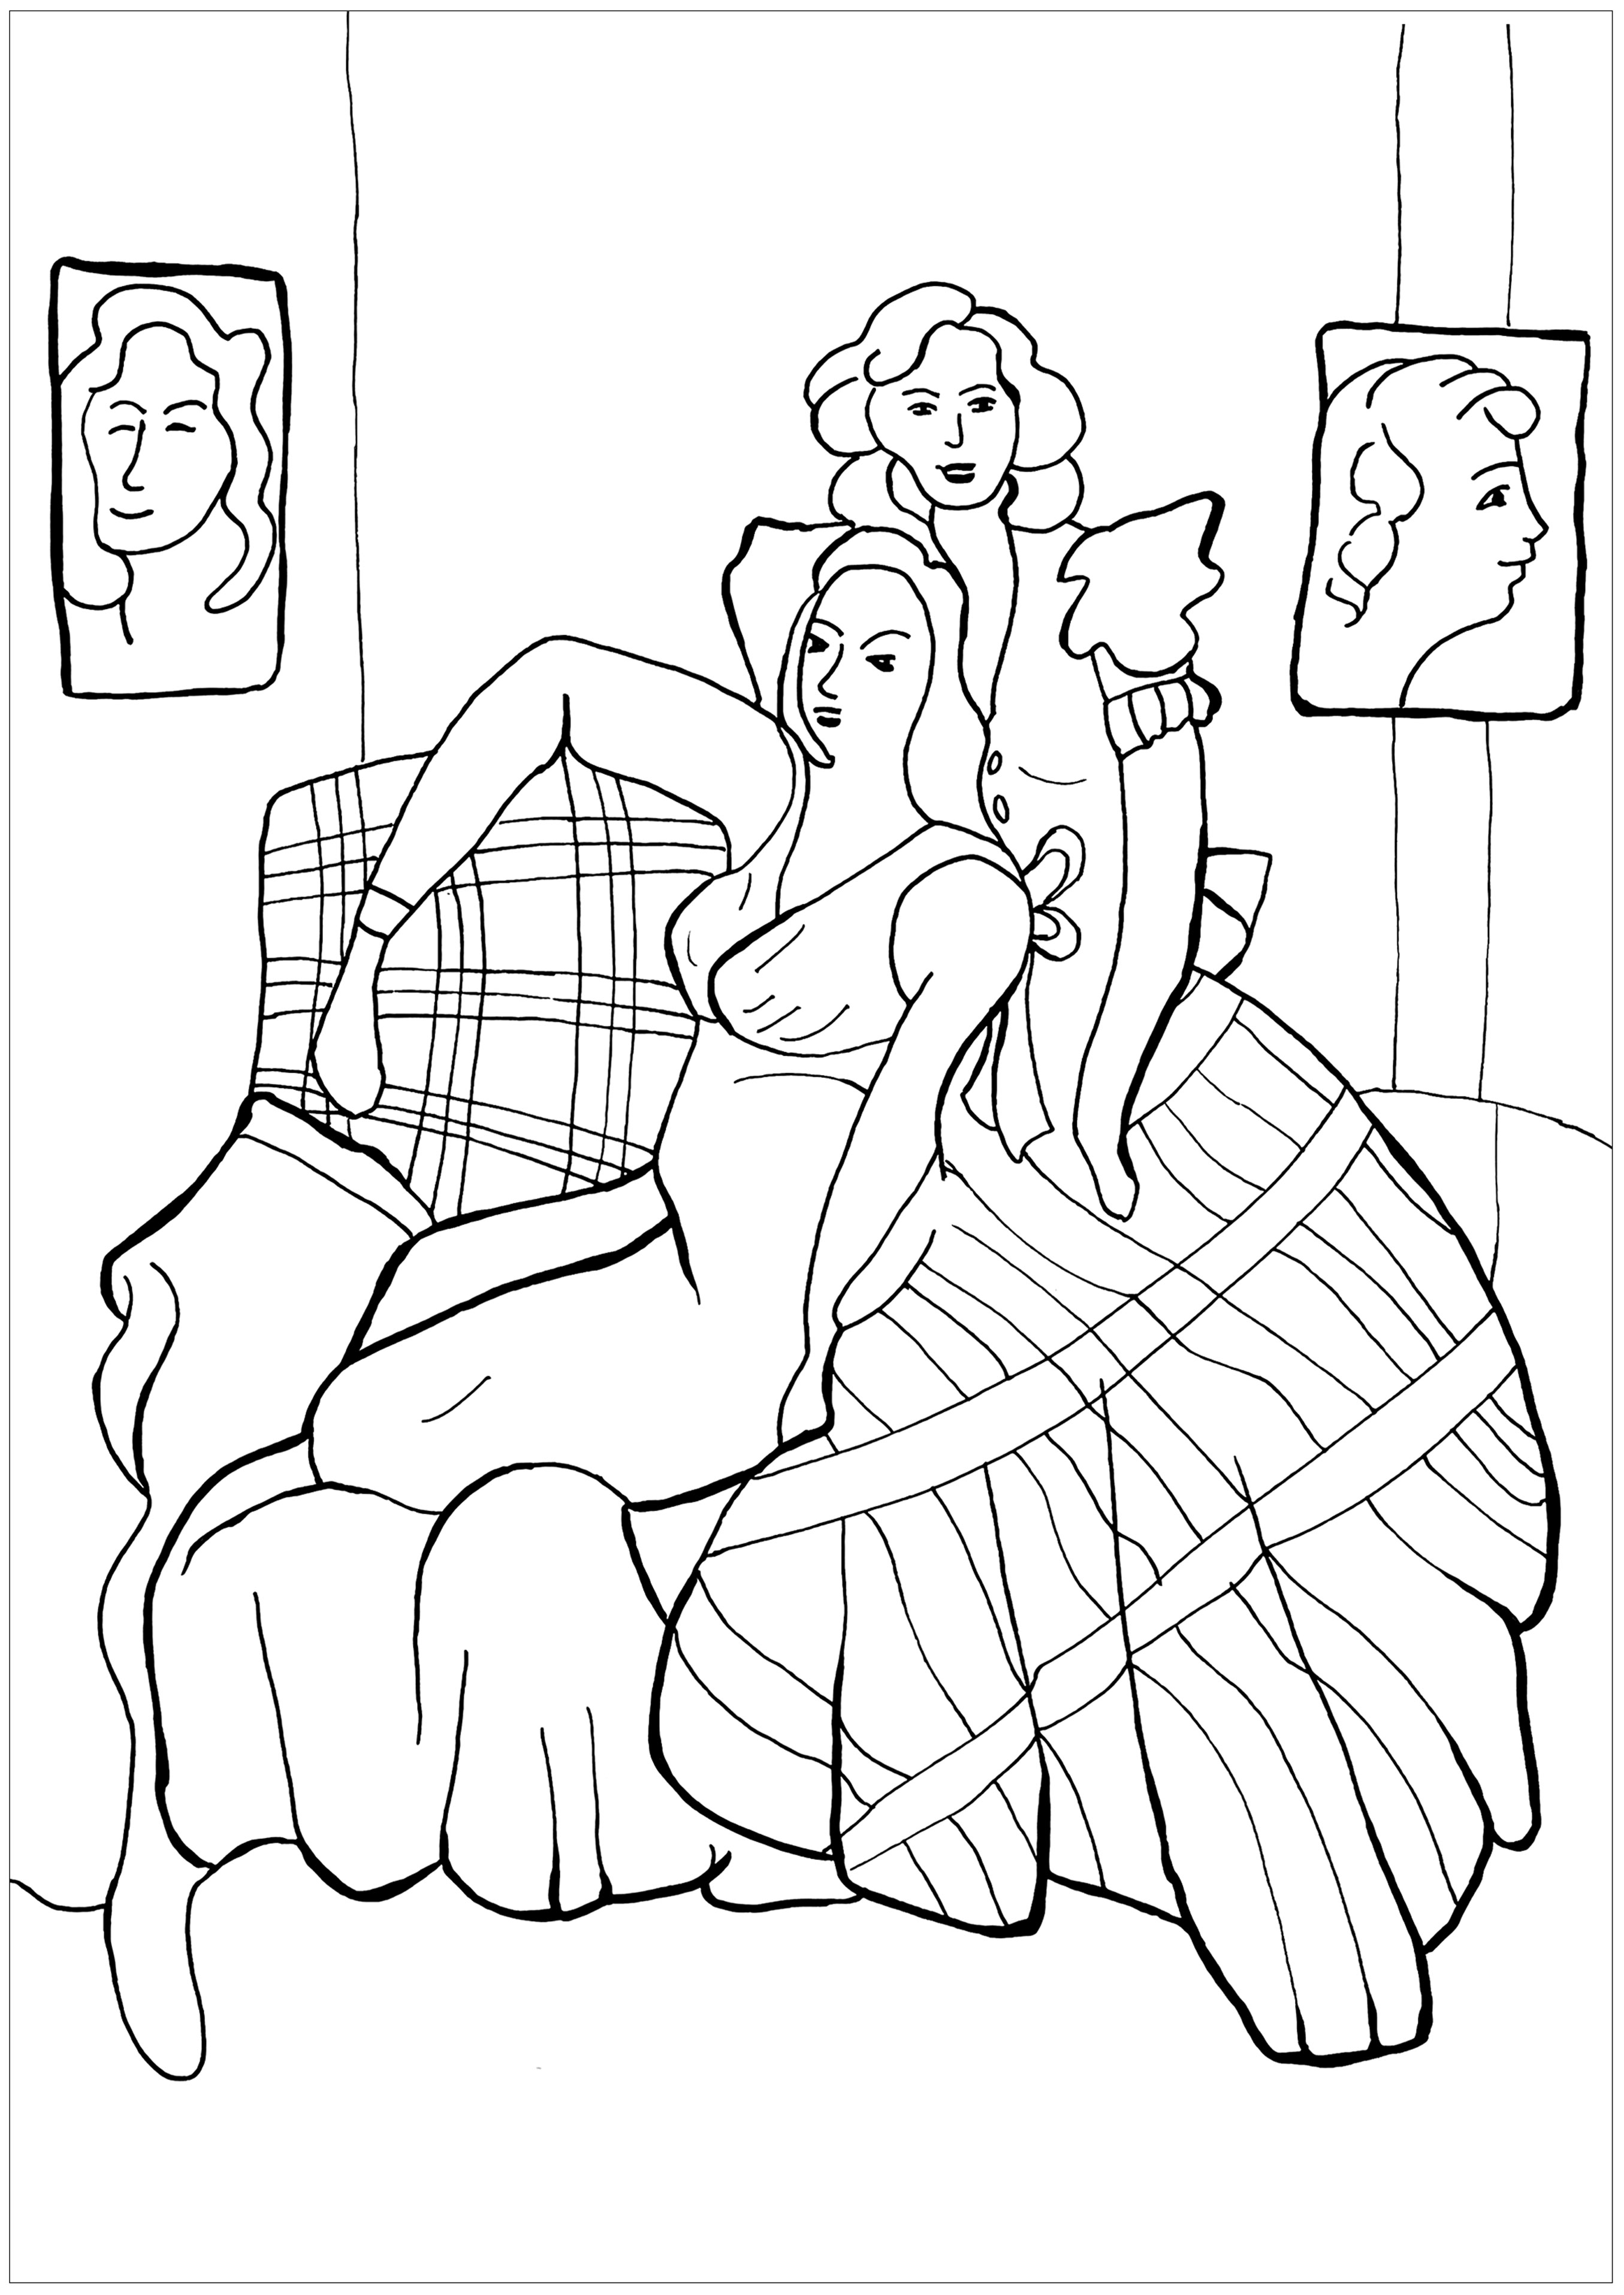 Coloriage créé à partir du tableau d'Henri Matisse : 'Deux jeunes filles, robe jaune, robe écossaise' (1941)